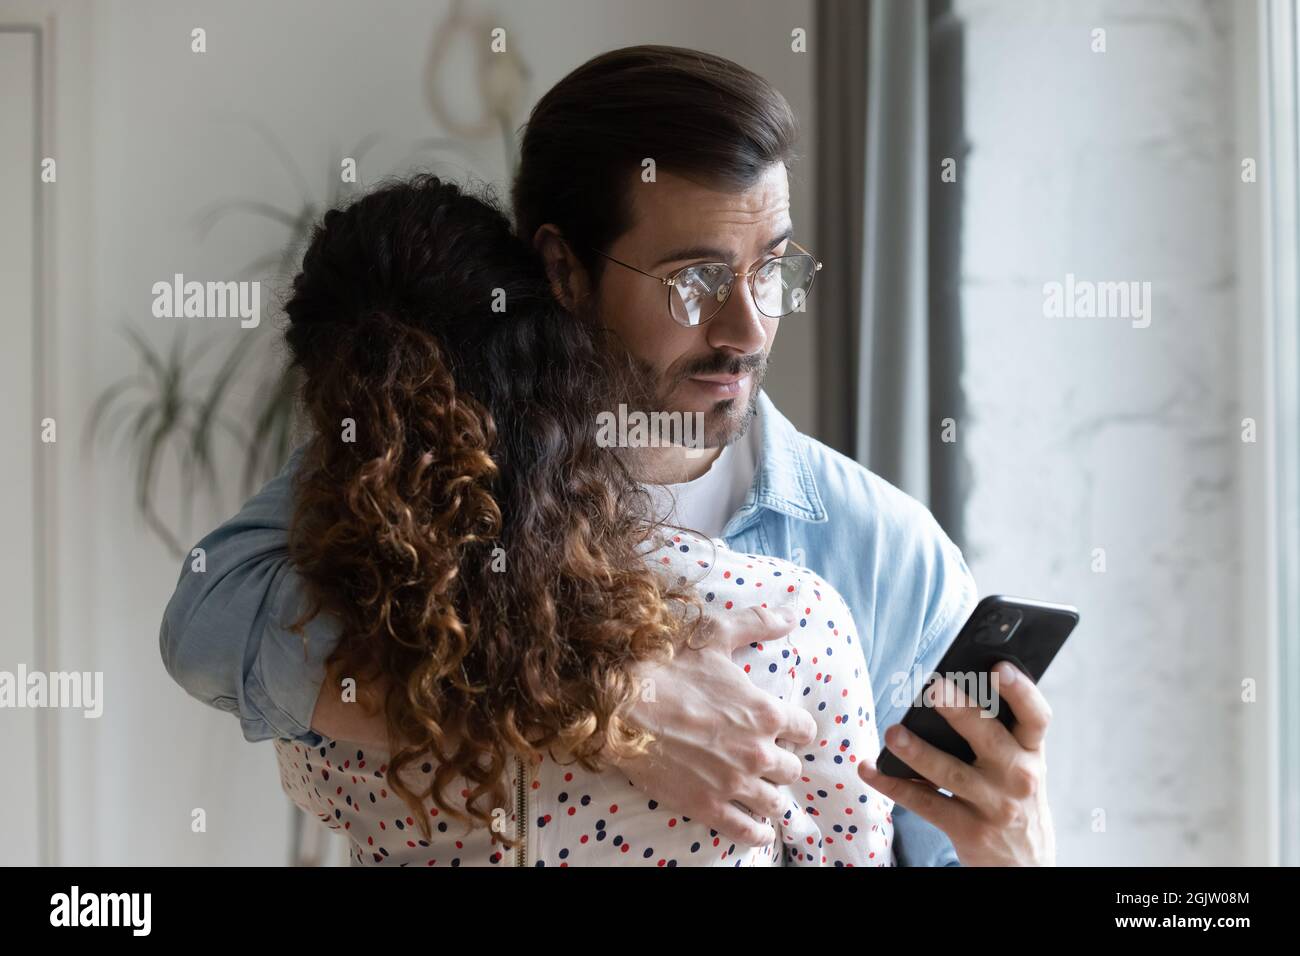 Un mari jaloux qui enserre sa femme et vérifie son téléphone Banque D'Images